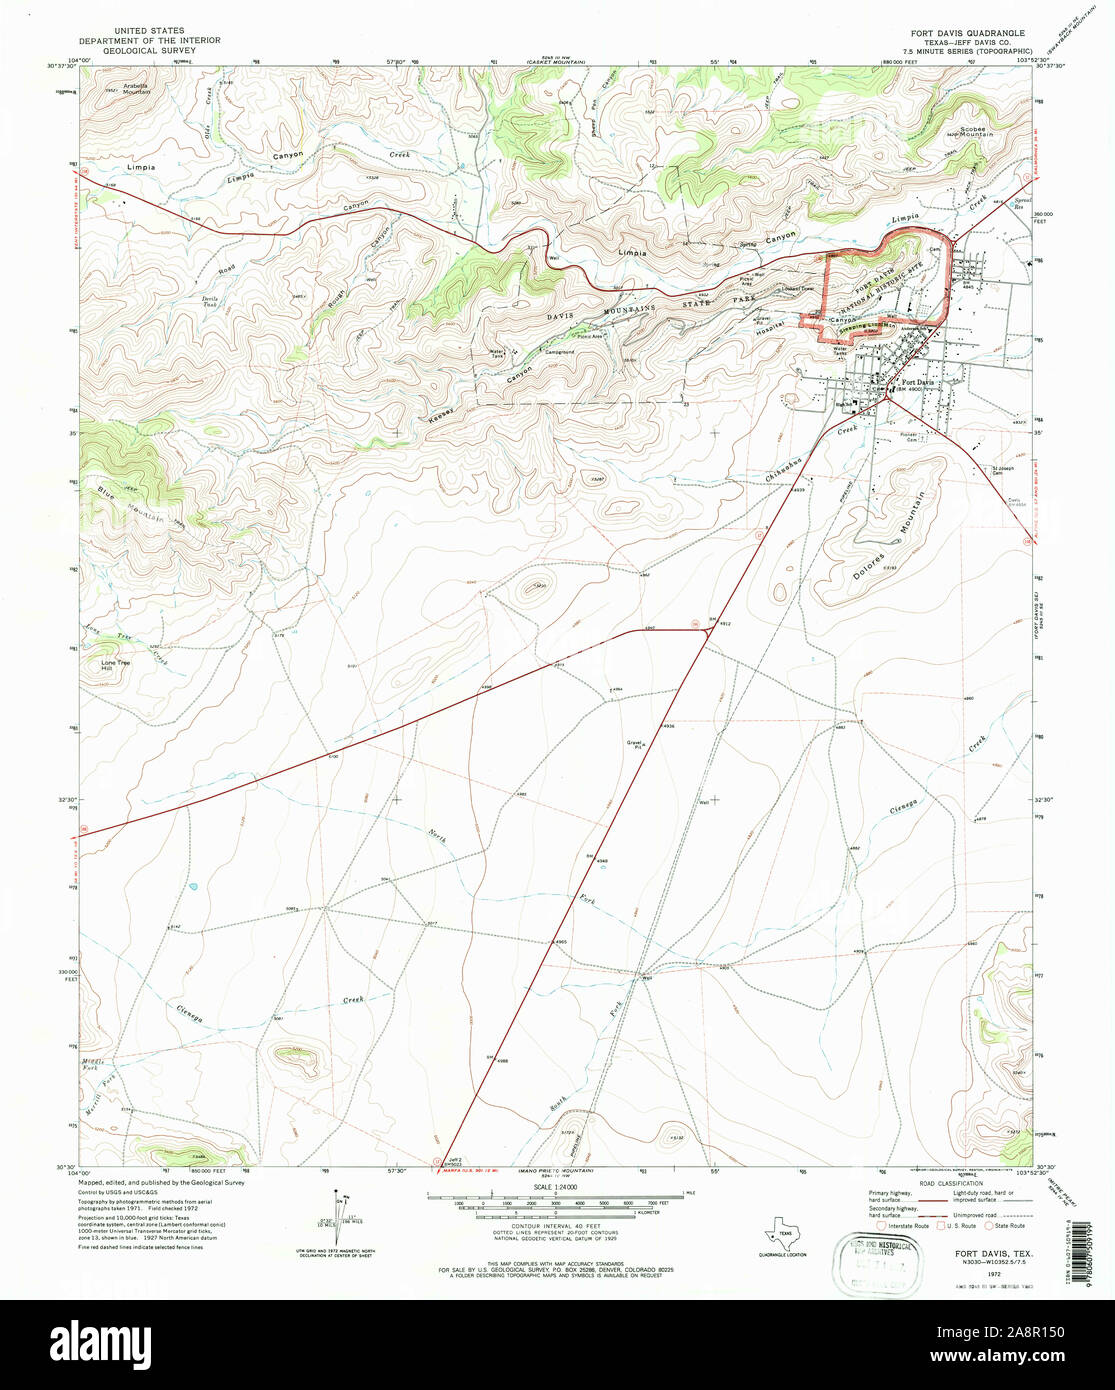 USGS Mapa TOPO TX Texas Fort Davis 1972 108220 24000 Restauración Foto de stock